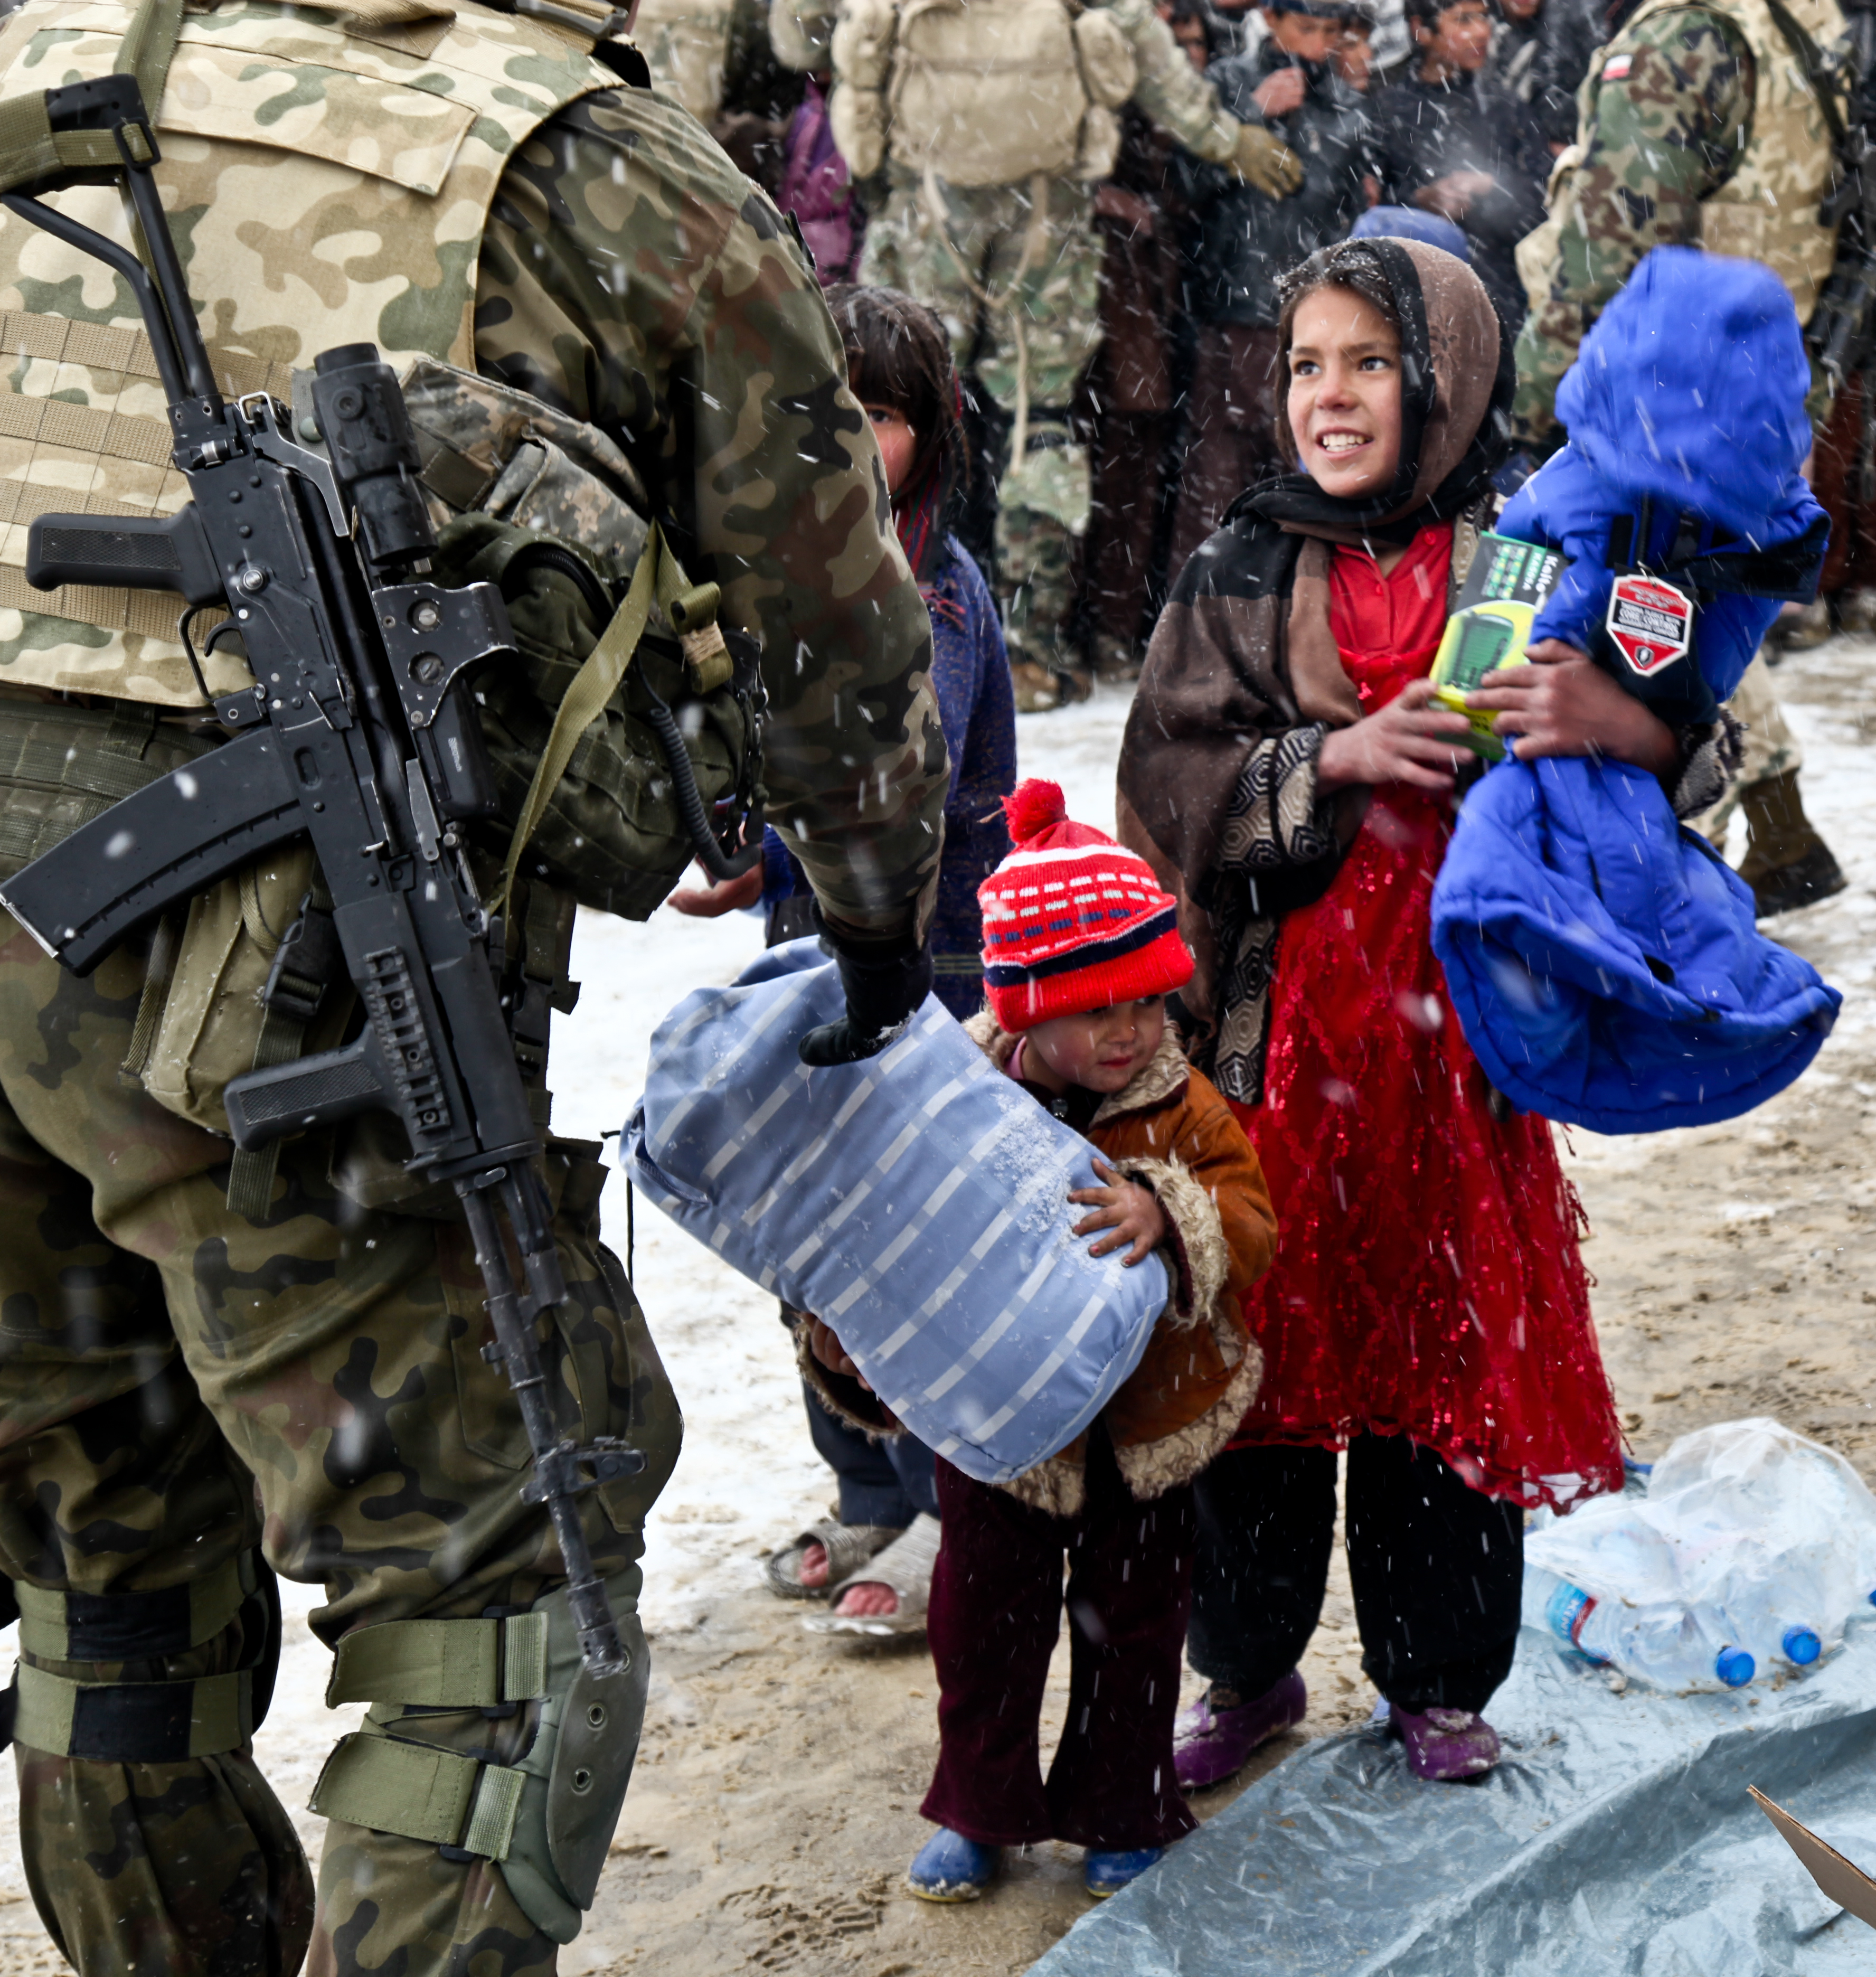 Сувениры из Афганистана. Вопросы от детей афганцам. Афганский ребенок и русский солдат.